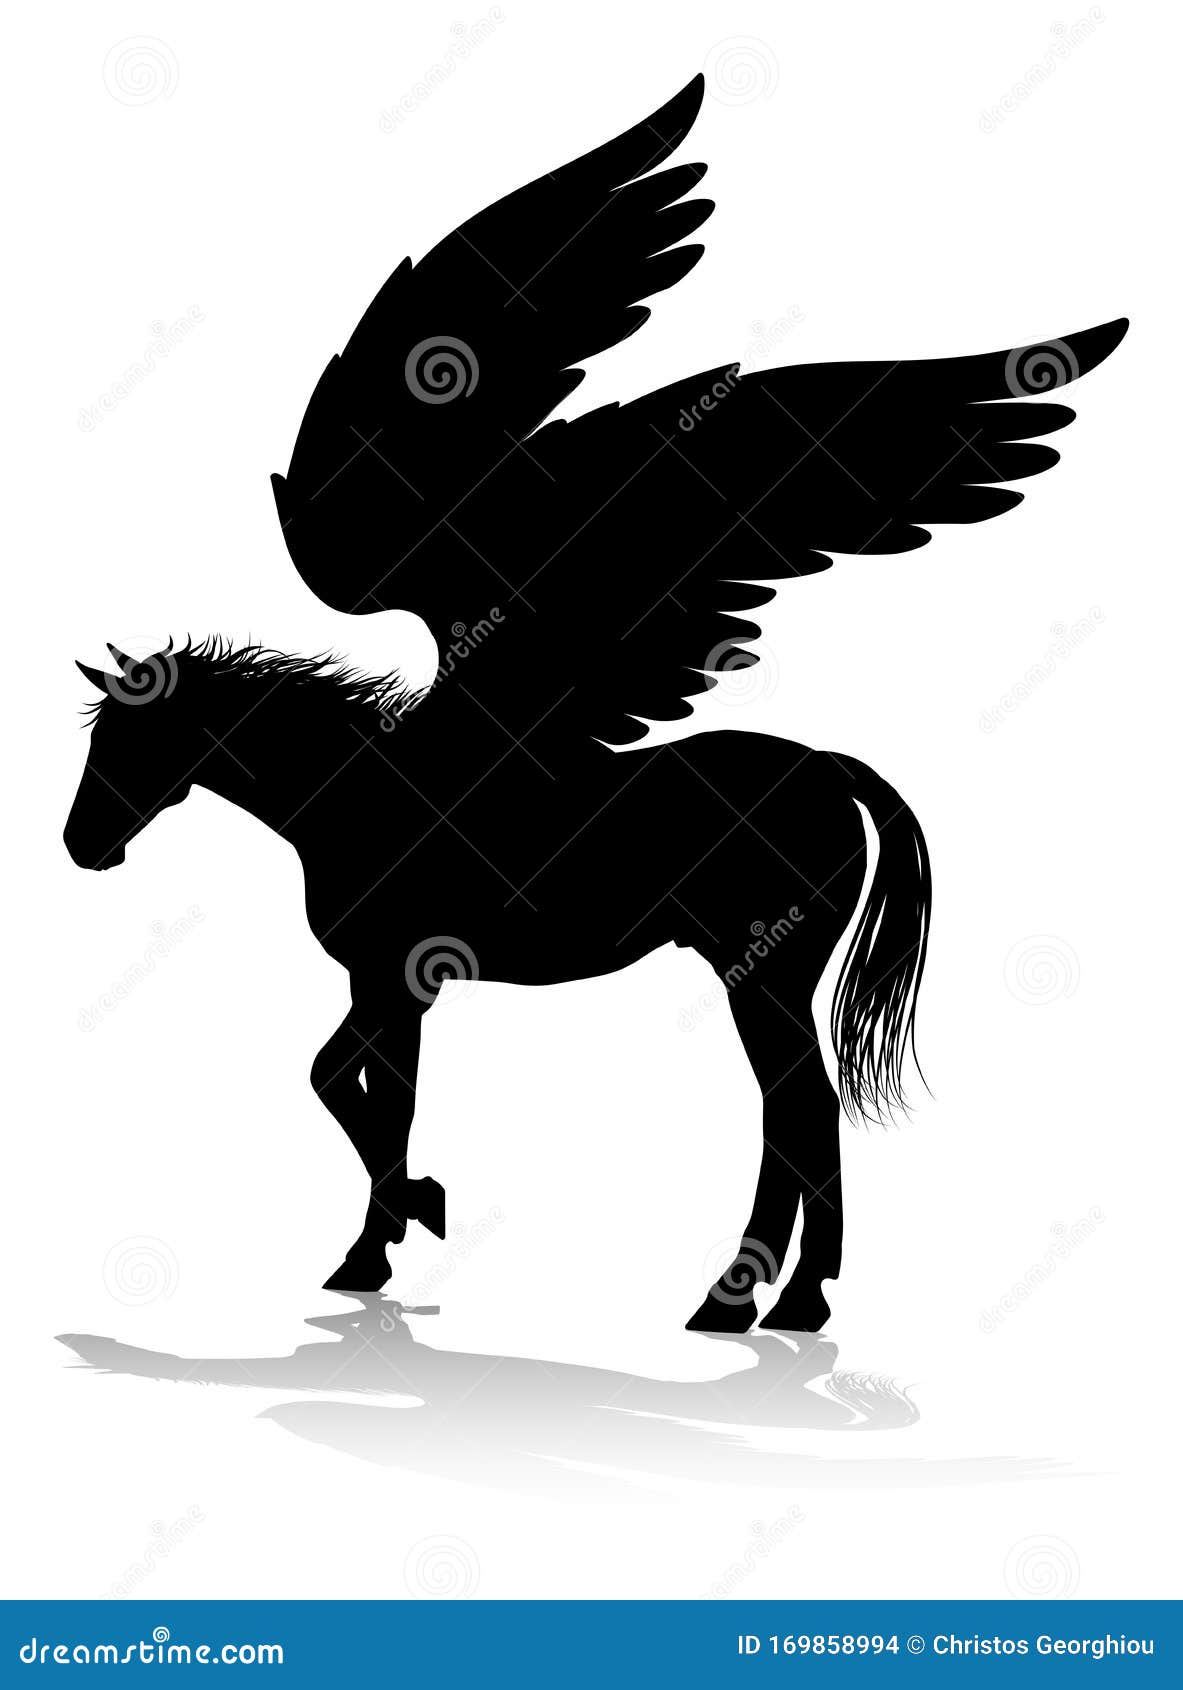 pegasus silhouette mythological winged horse